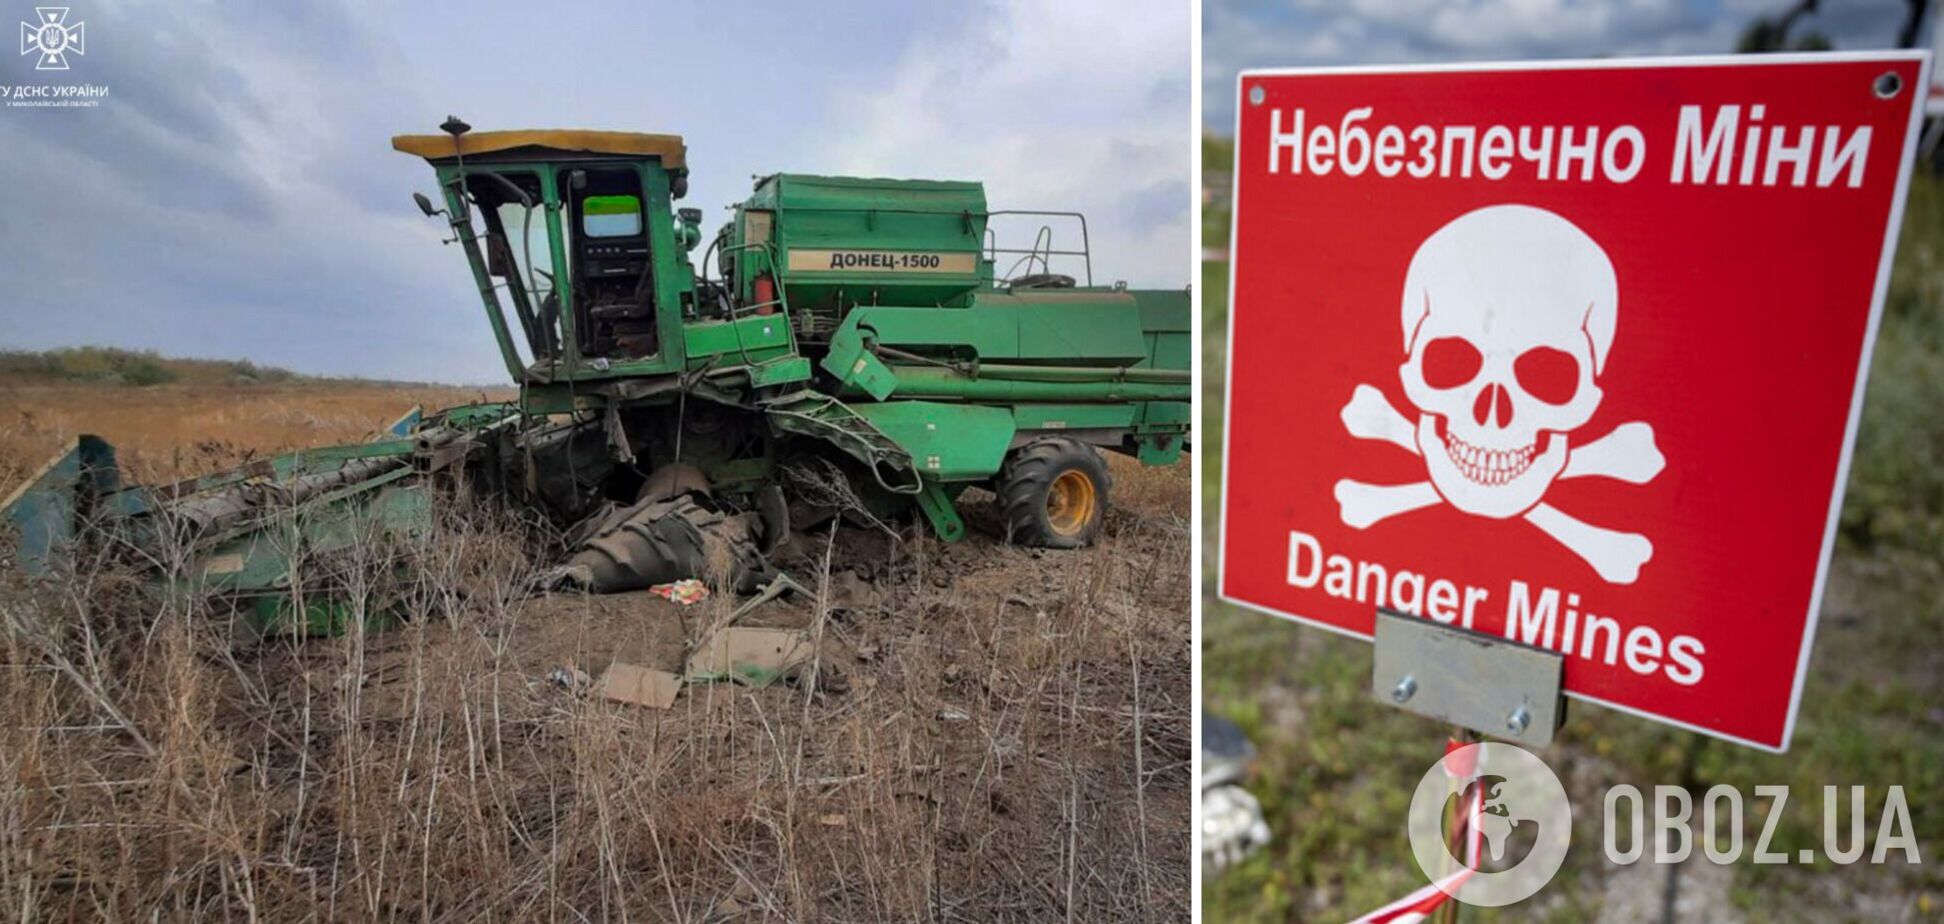 В Николаевской области комбайн взорвался на мине: два человека травмированы. Фото